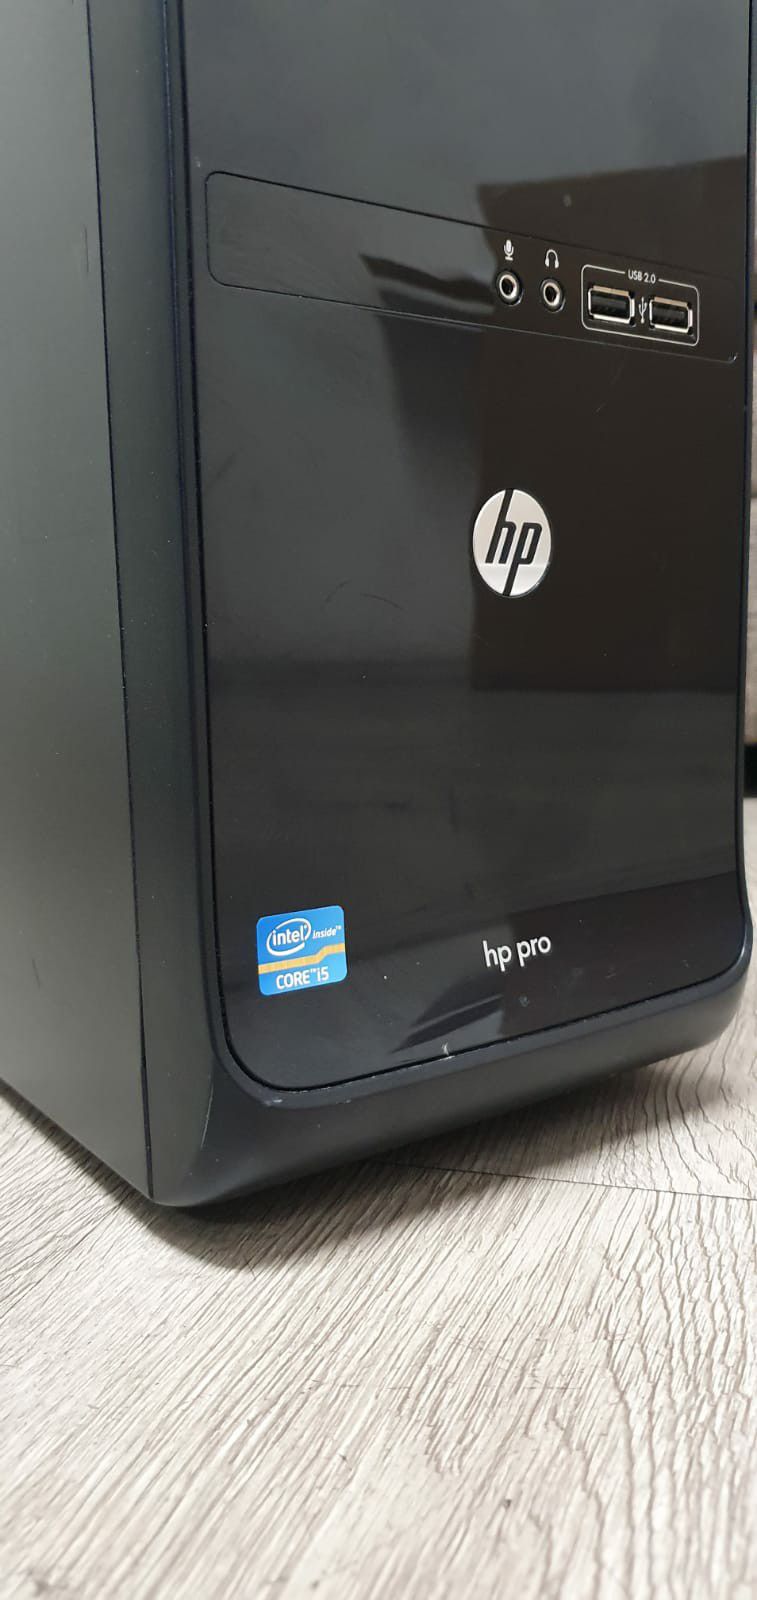 Hp Pro desktop computer i5